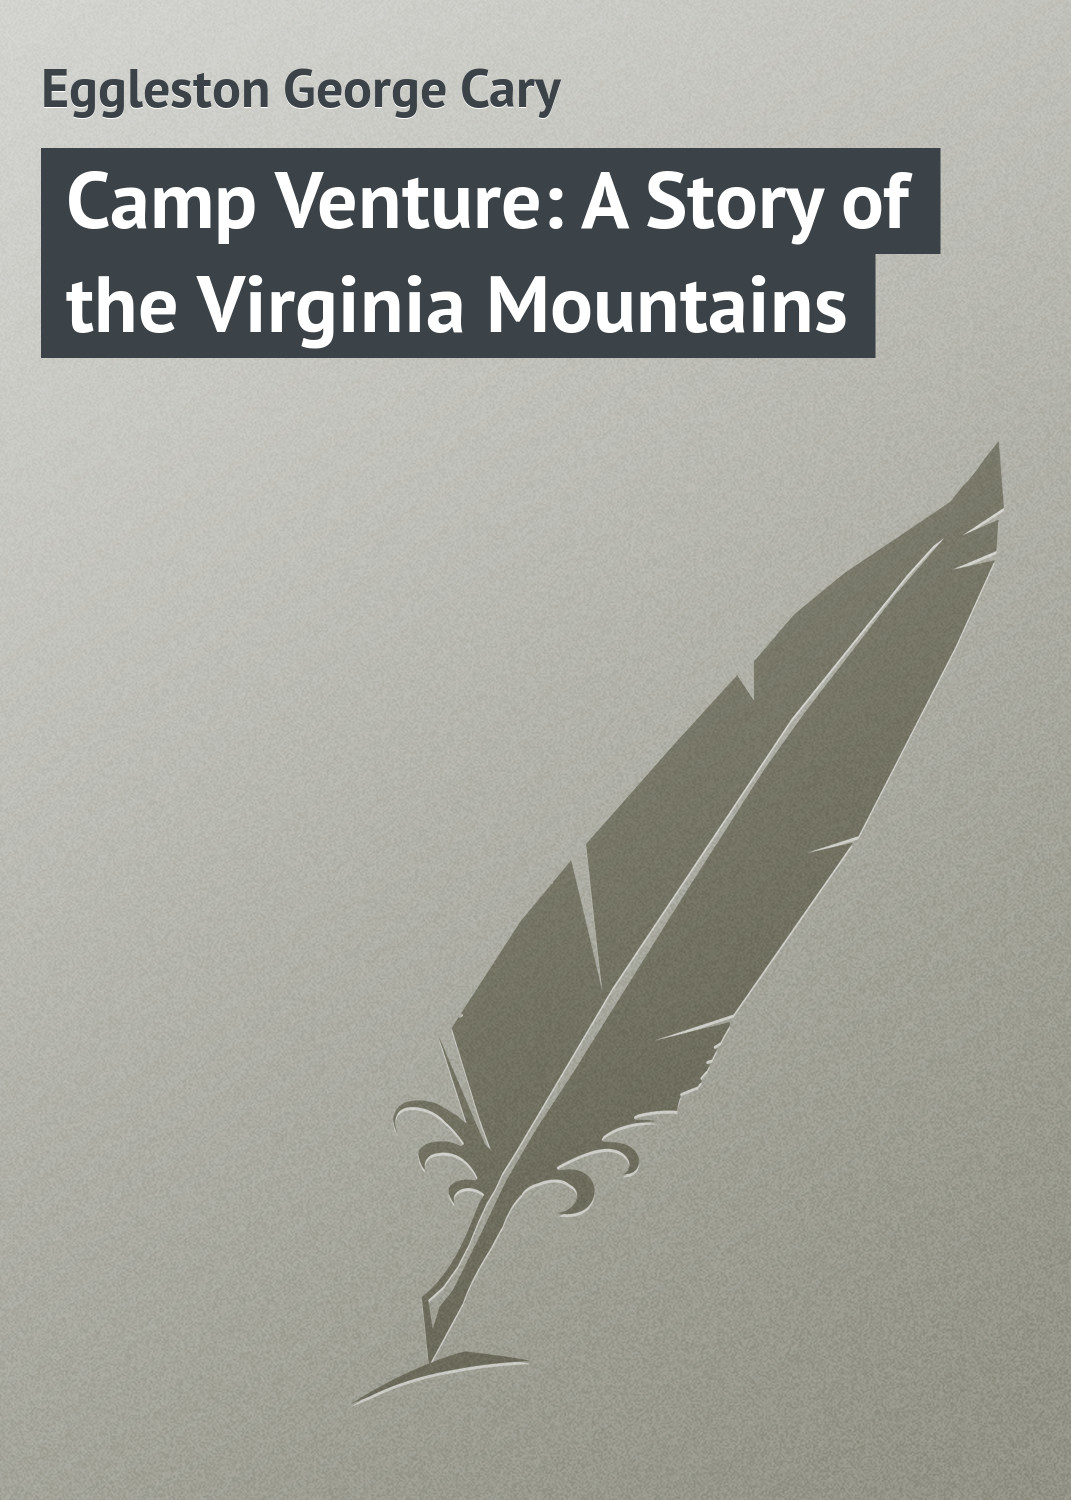 Книга Camp Venture: A Story of the Virginia Mountains из серии , созданная George Eggleston, может относится к жанру Зарубежная классика, Зарубежные детские книги. Стоимость электронной книги Camp Venture: A Story of the Virginia Mountains с идентификатором 23148187 составляет 5.99 руб.